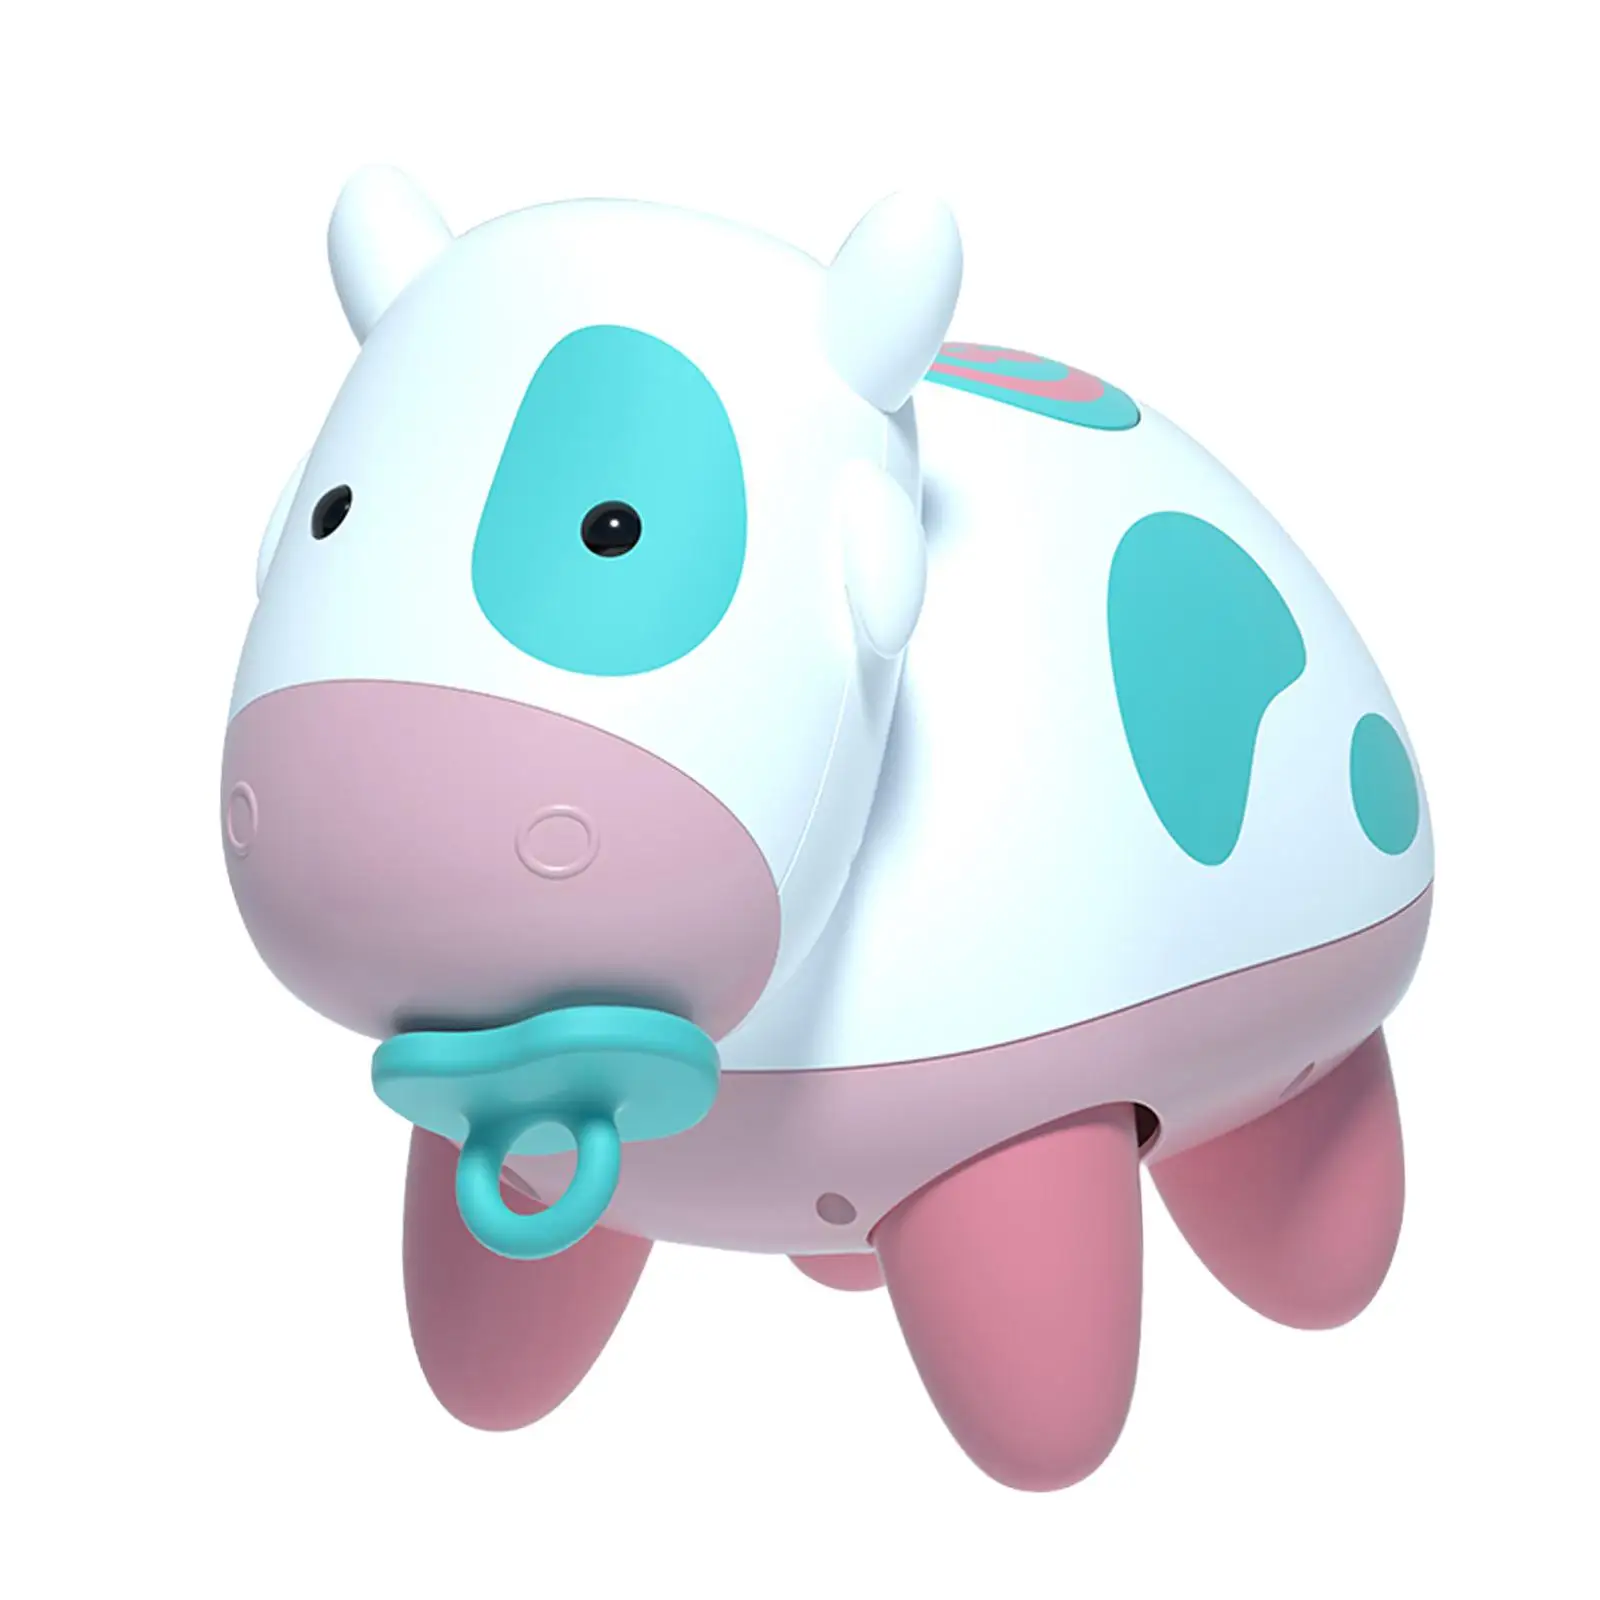 

Электрическая игрушка корова для ползания с музыкальными звуками, забавные электронные питомцы, детская игрушка для новорожденных, развлечения для мальчиков и девочек от 6 до 12 до 18 месяцев